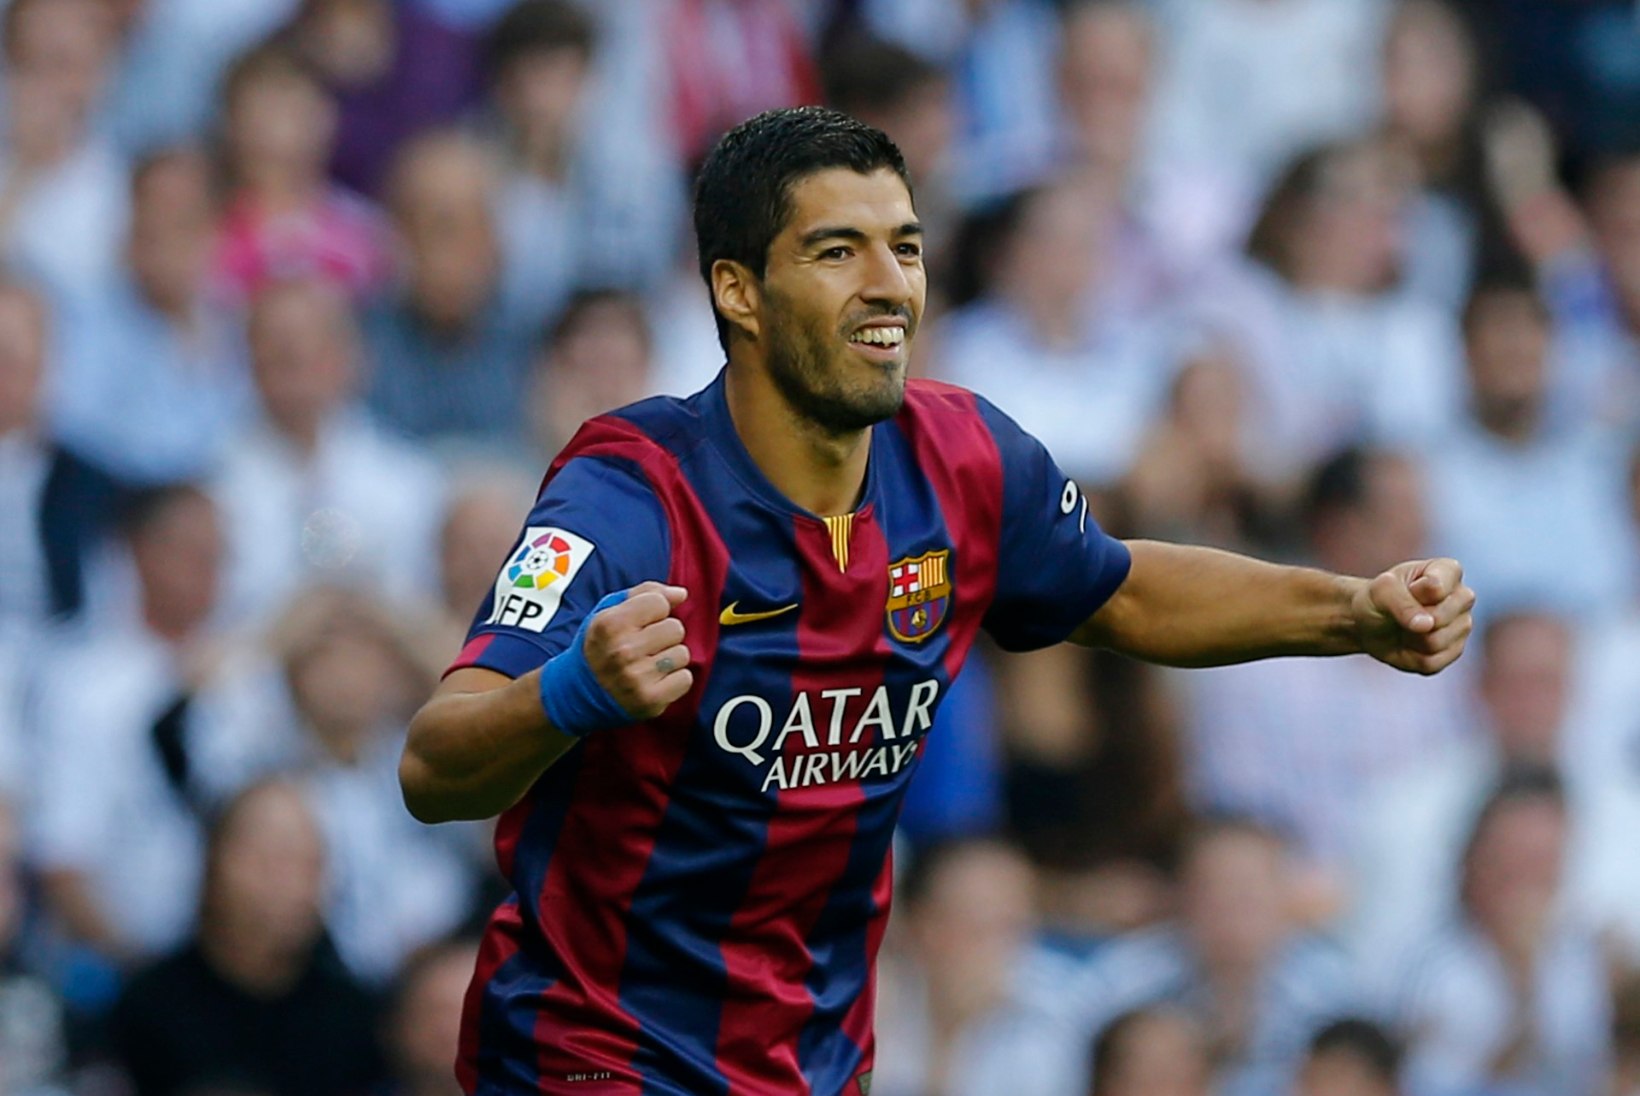 Chiellini hammustamise tõttu eemaldati Suarez maailma parima jalgpalluri valimiselt